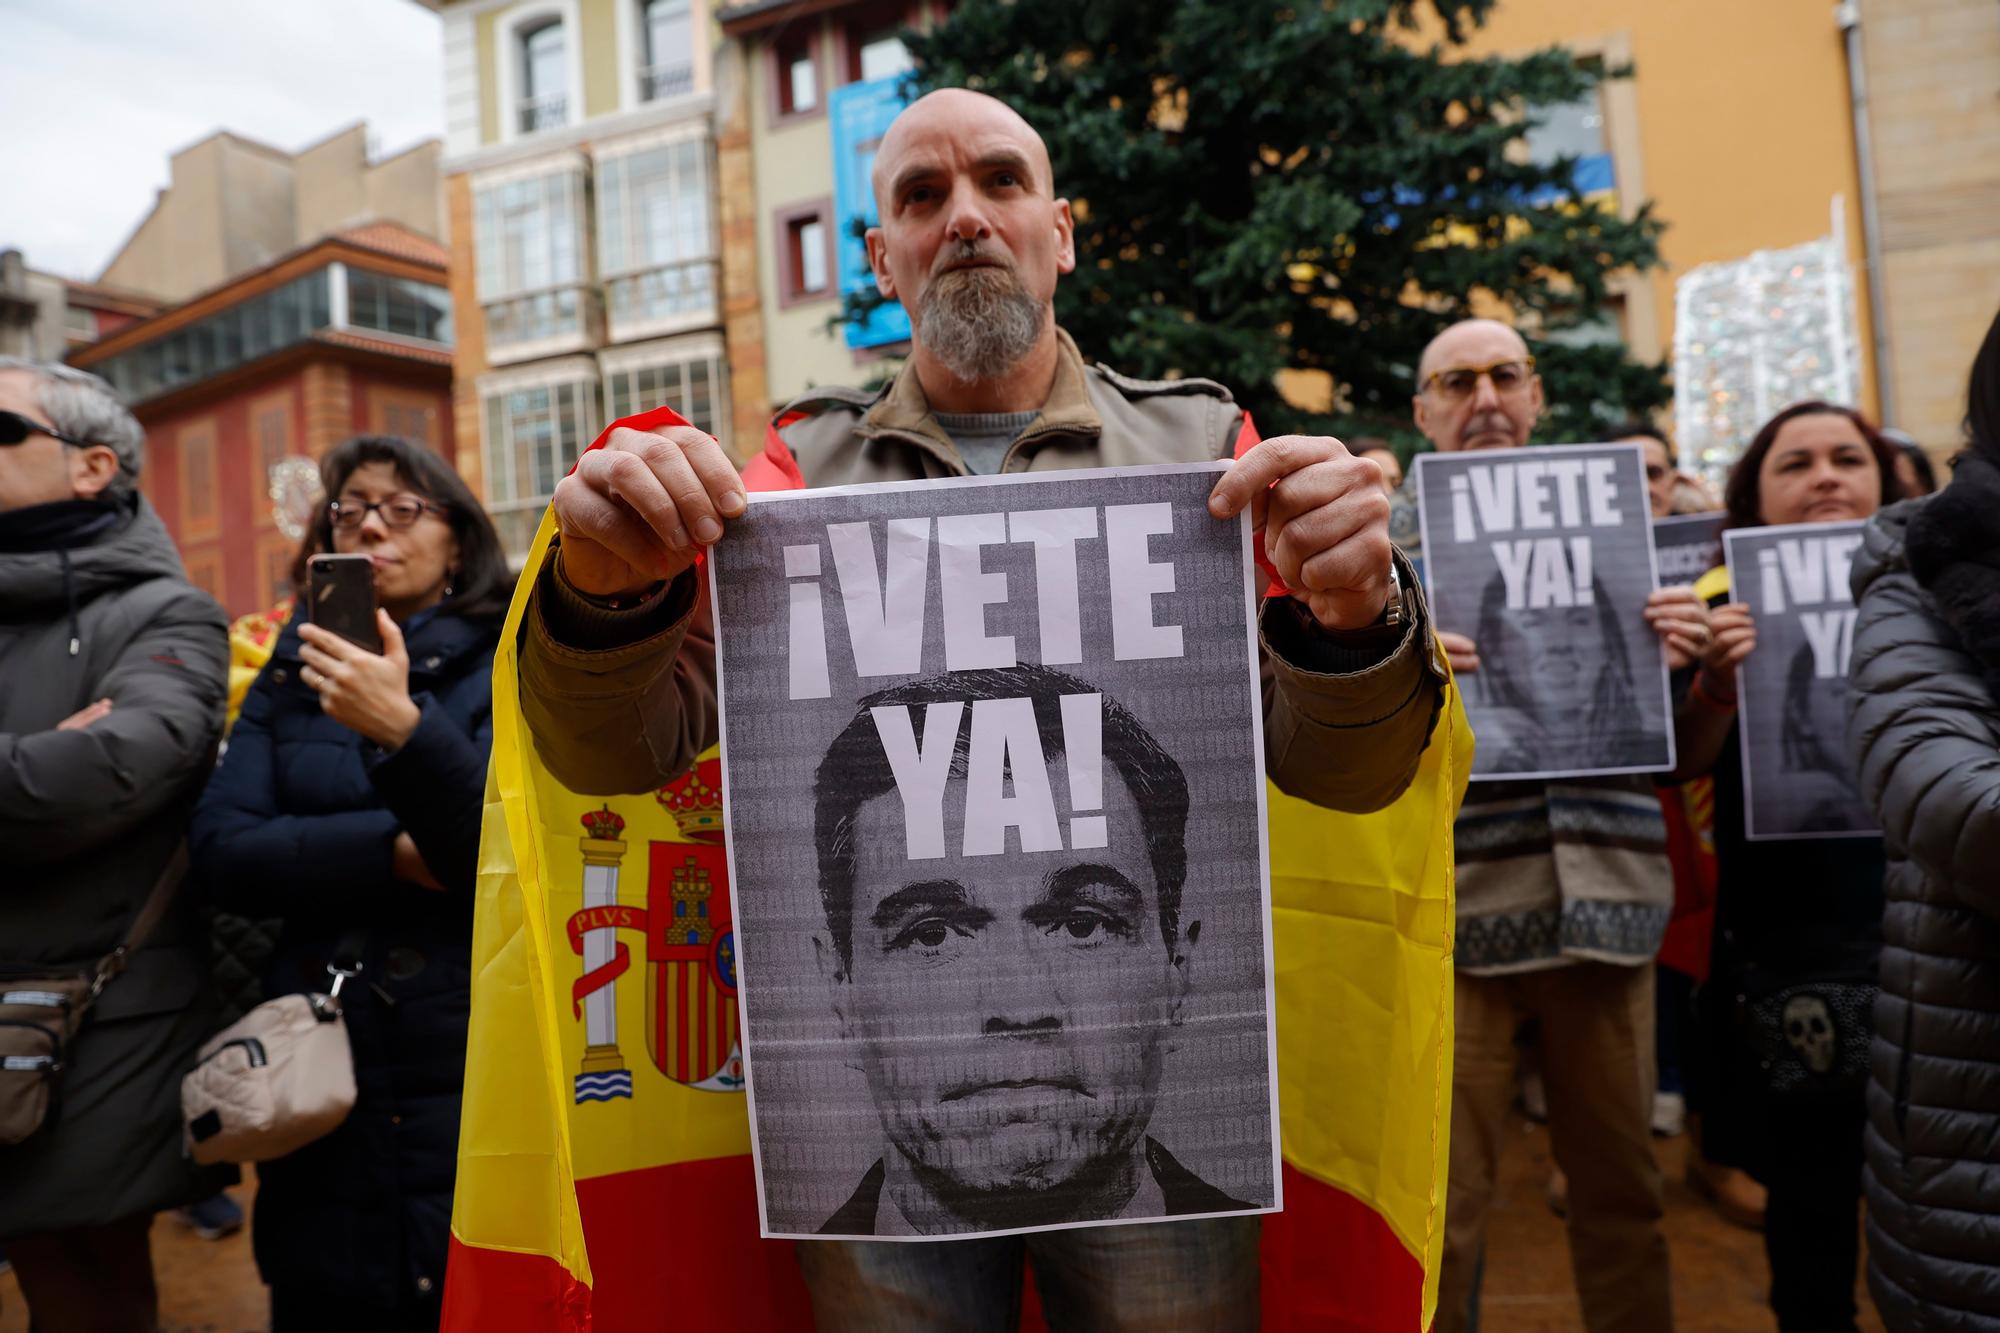 EN IMÁGENES: Vox exige elecciones generales al grito de "Sánchez vete ya" en la plaza del Ayuntamiento de Oviedo